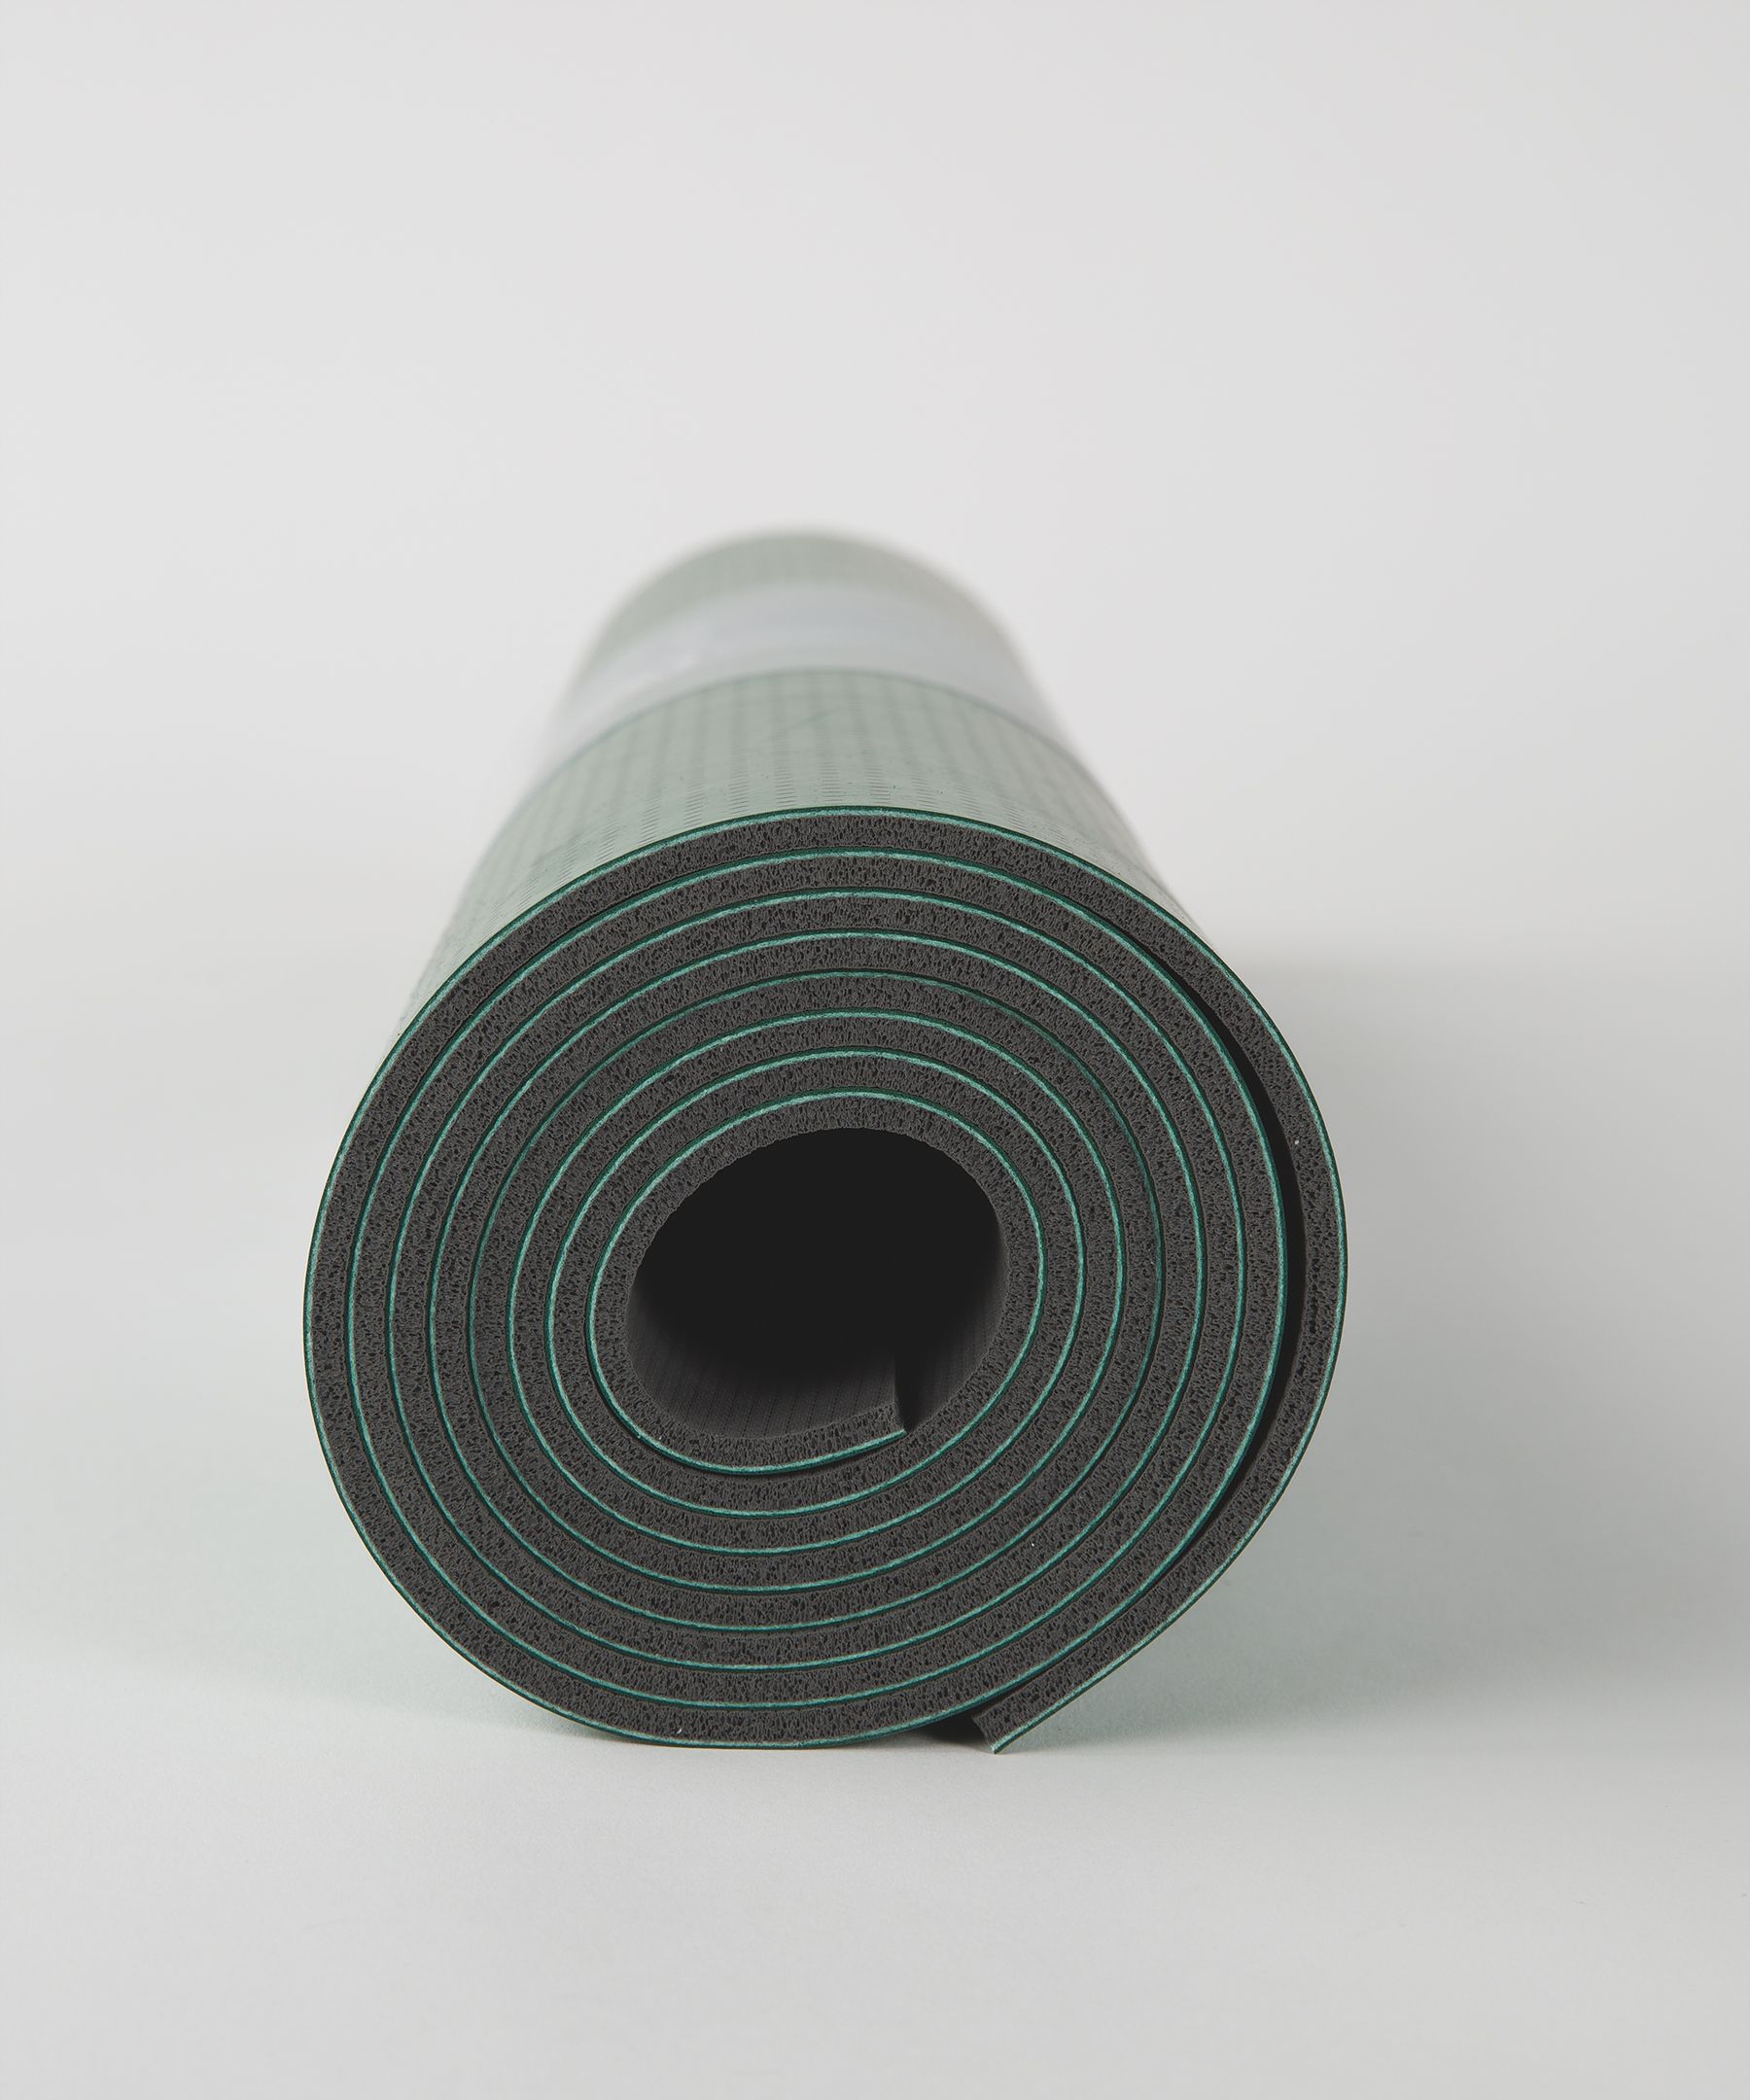 lululemon extra long yoga mat